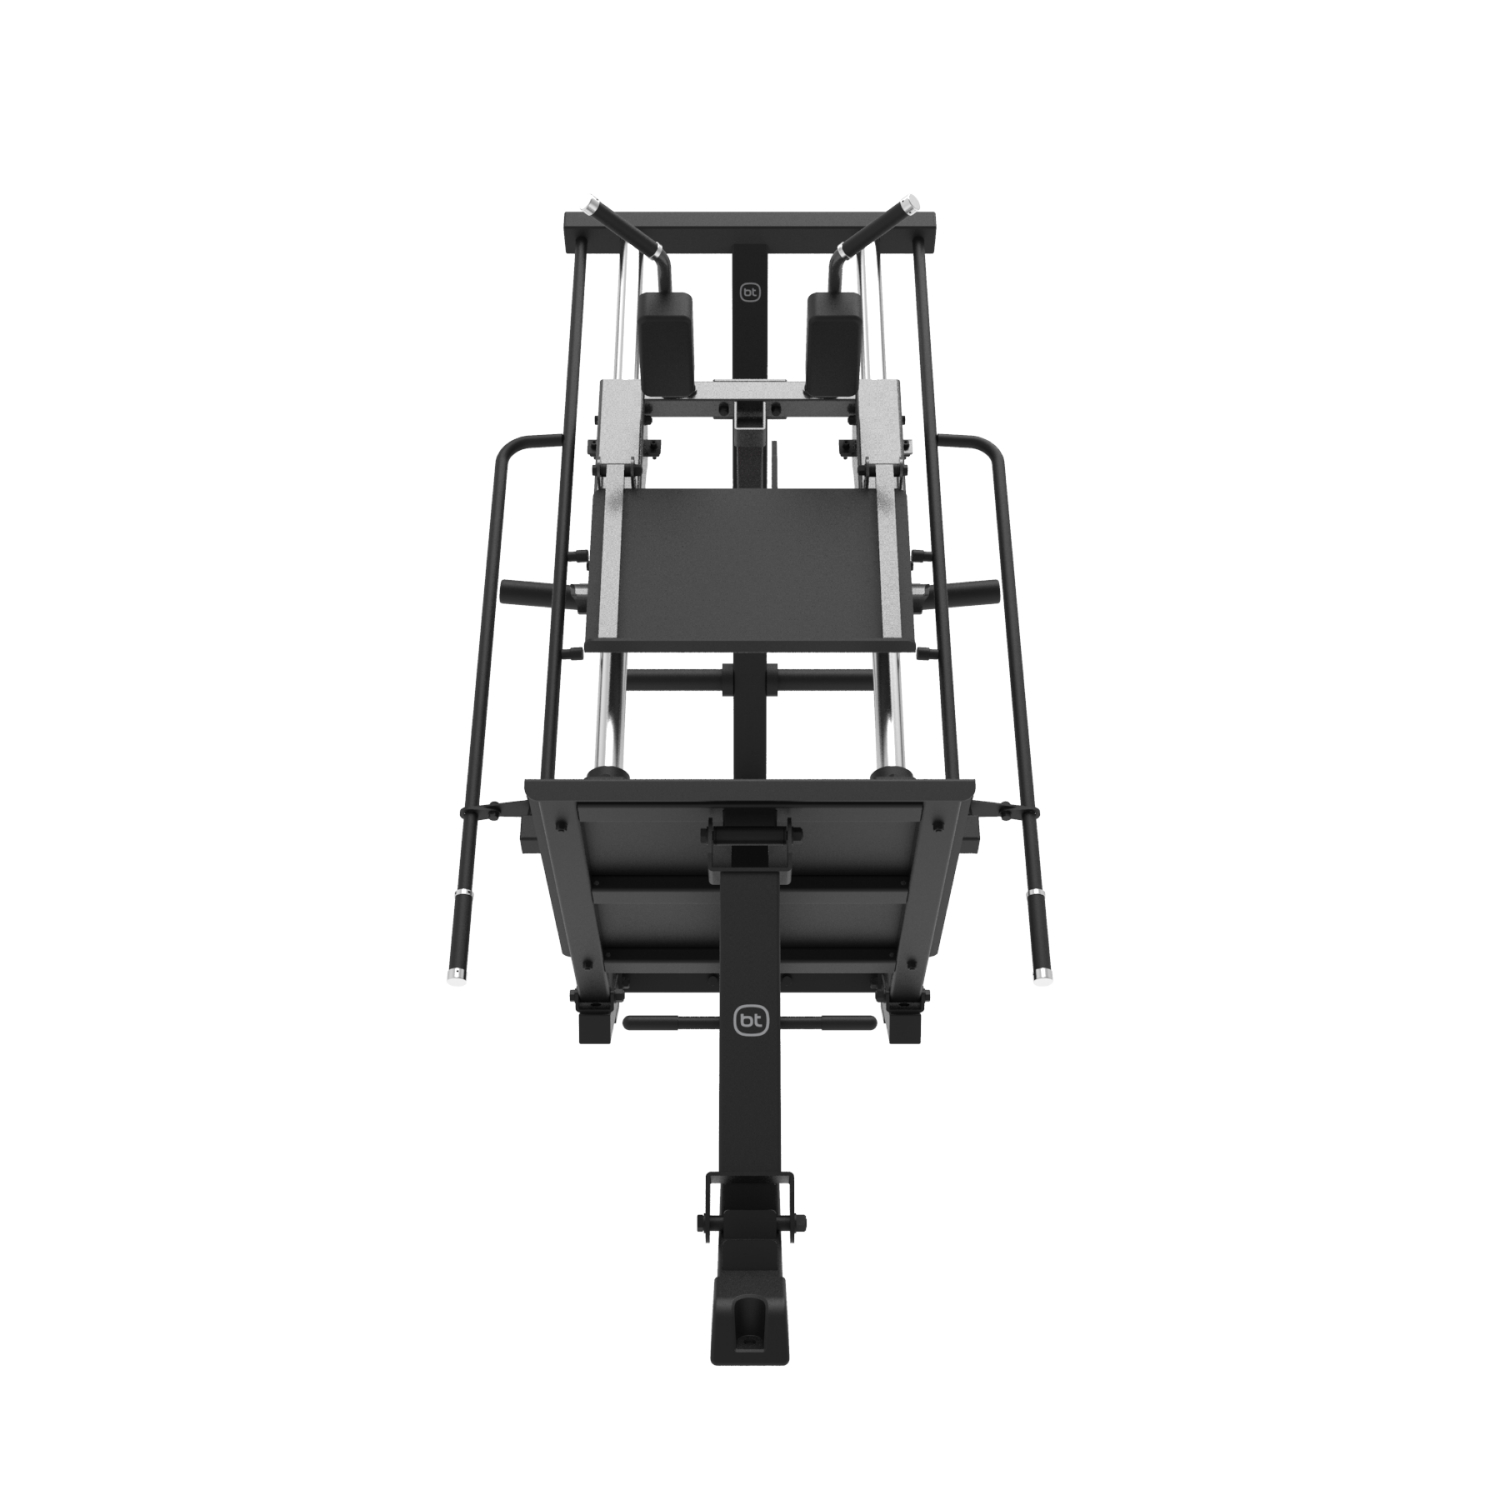 Leg Press / Hack Squat SG59 Realiza doble ejercicio de press de pierna y sentadilla inclinada.